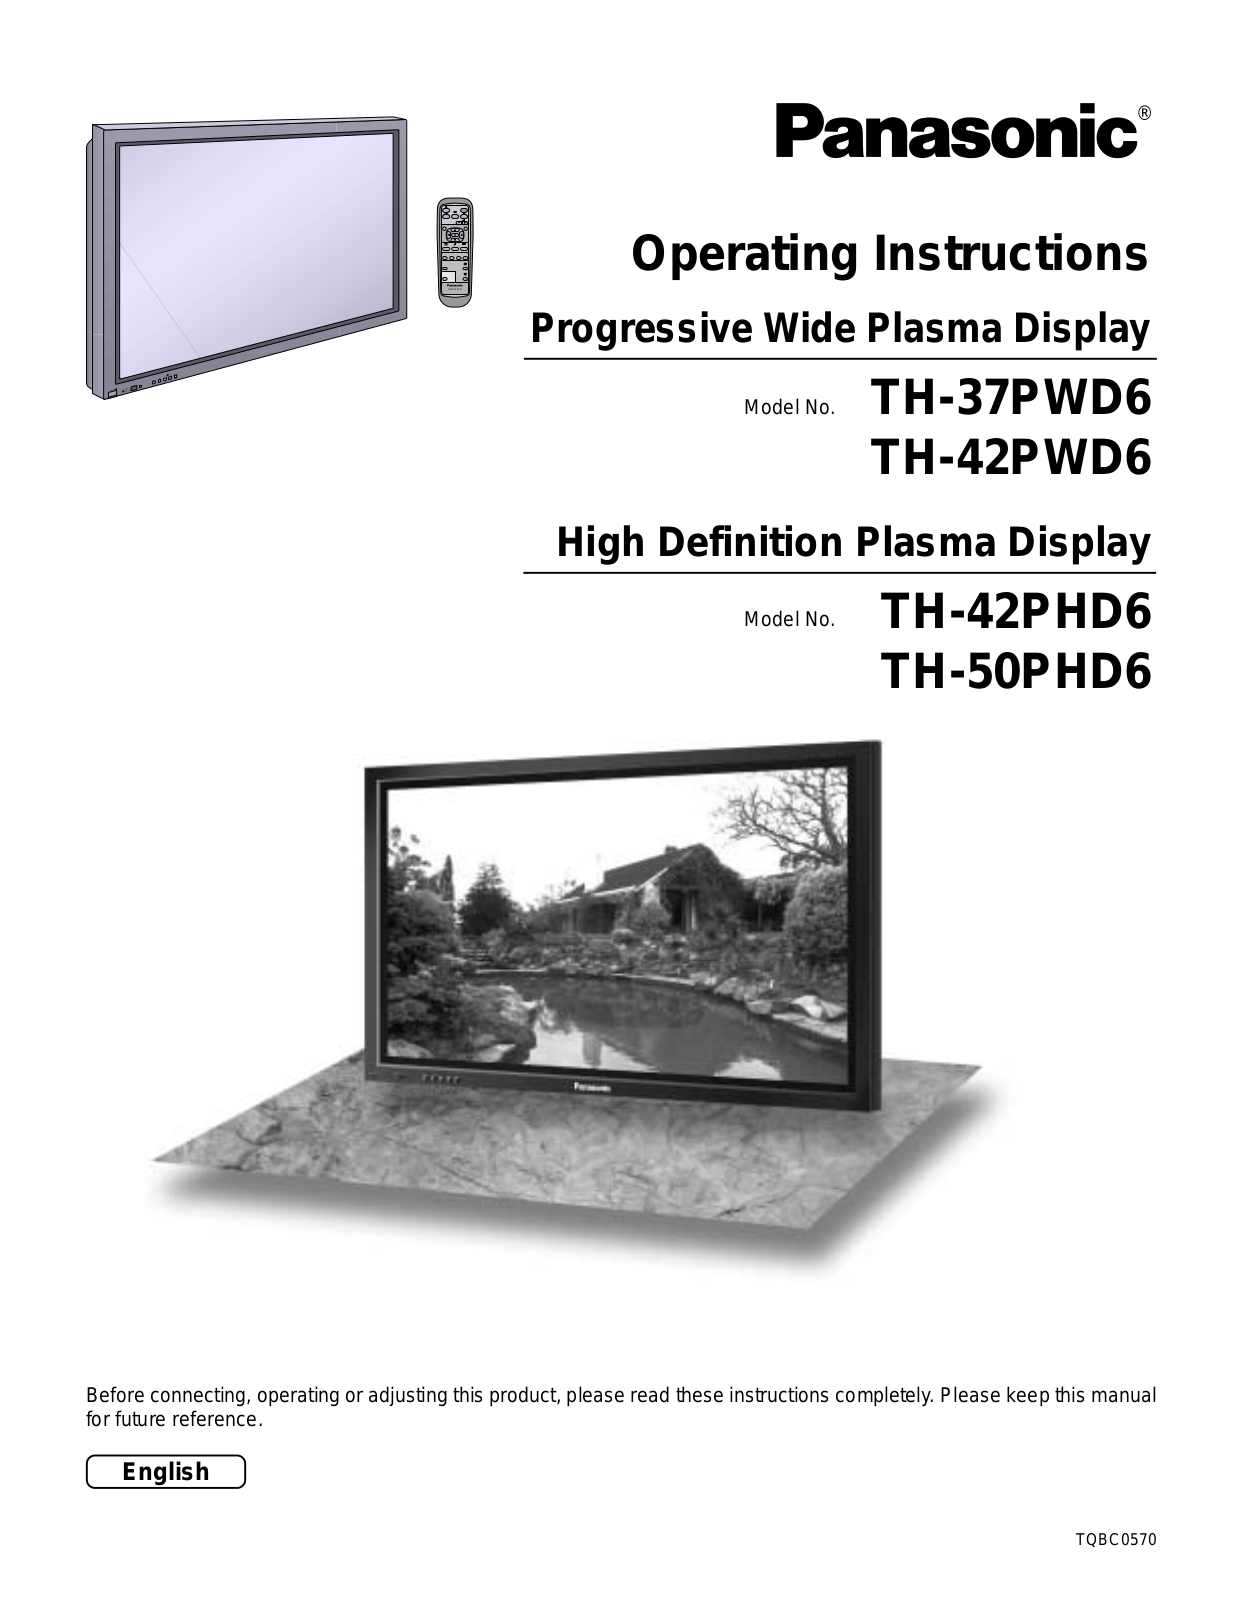 Panasonic TH-42PHD6, TH-42PWD6, TH-37PWD6, TH-50PHD6 User Manual